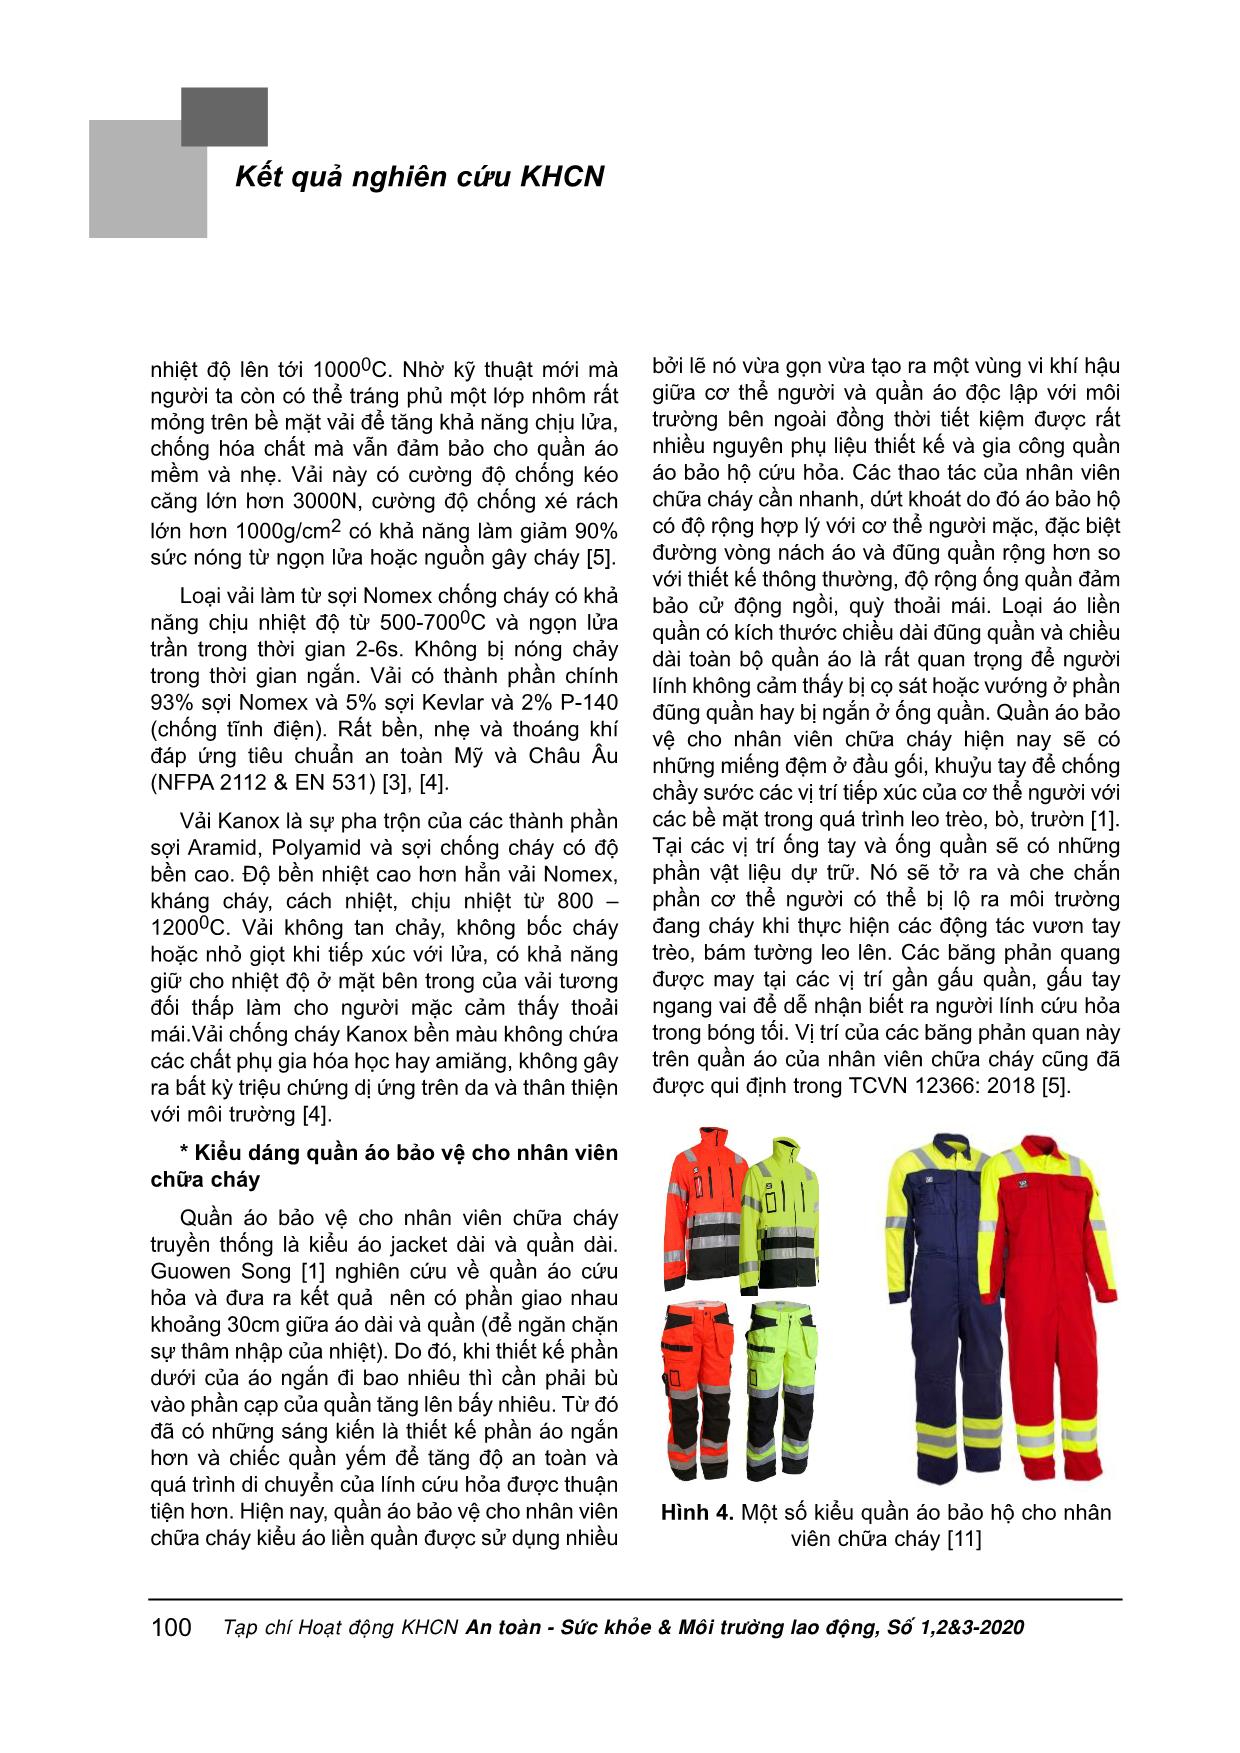 Nghiên cứu tổng quan quần áo bảo vệ cho nhân viên chữa cháy trang 5